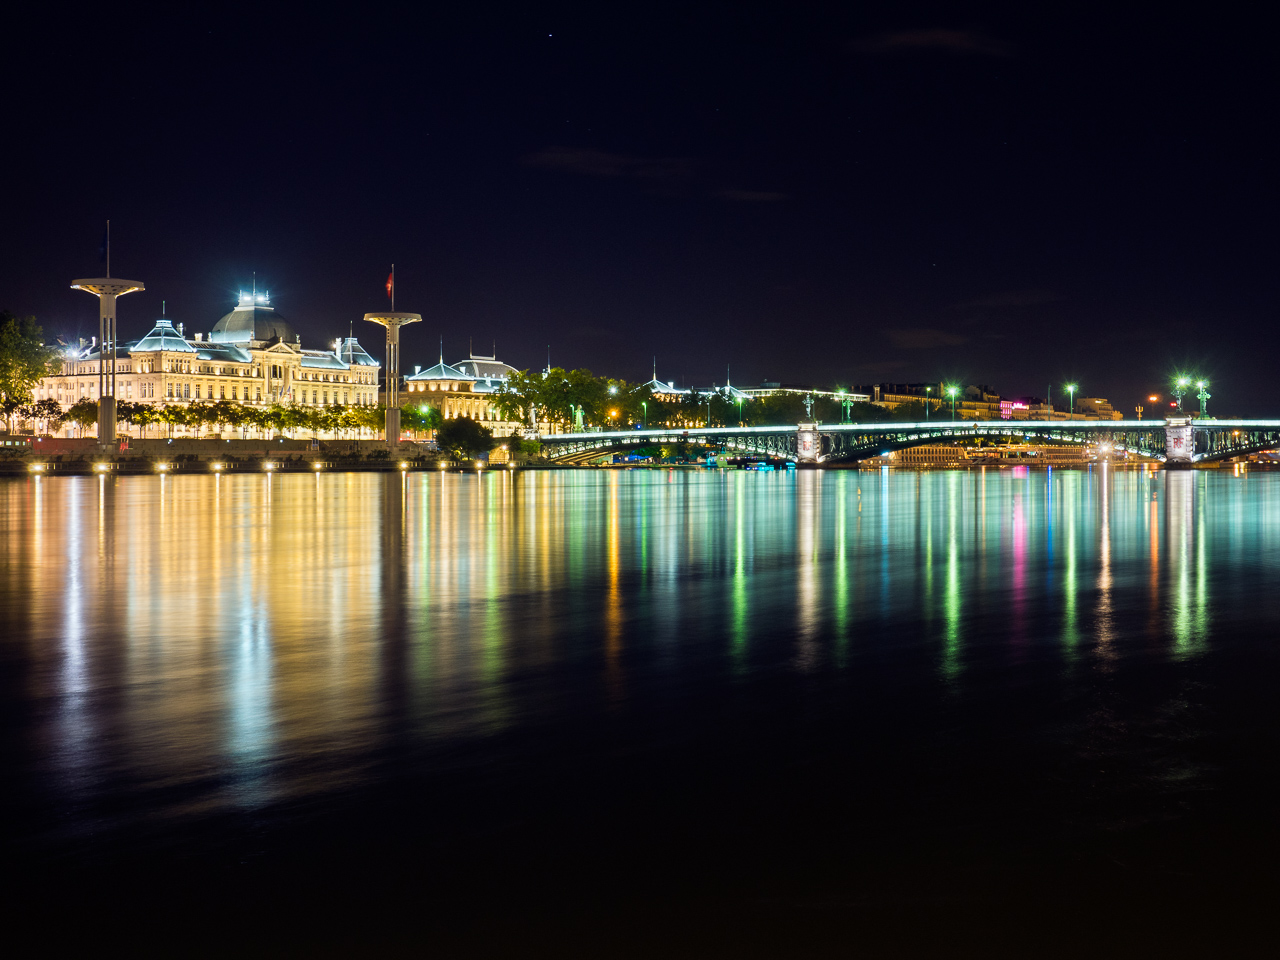 Lyon at night